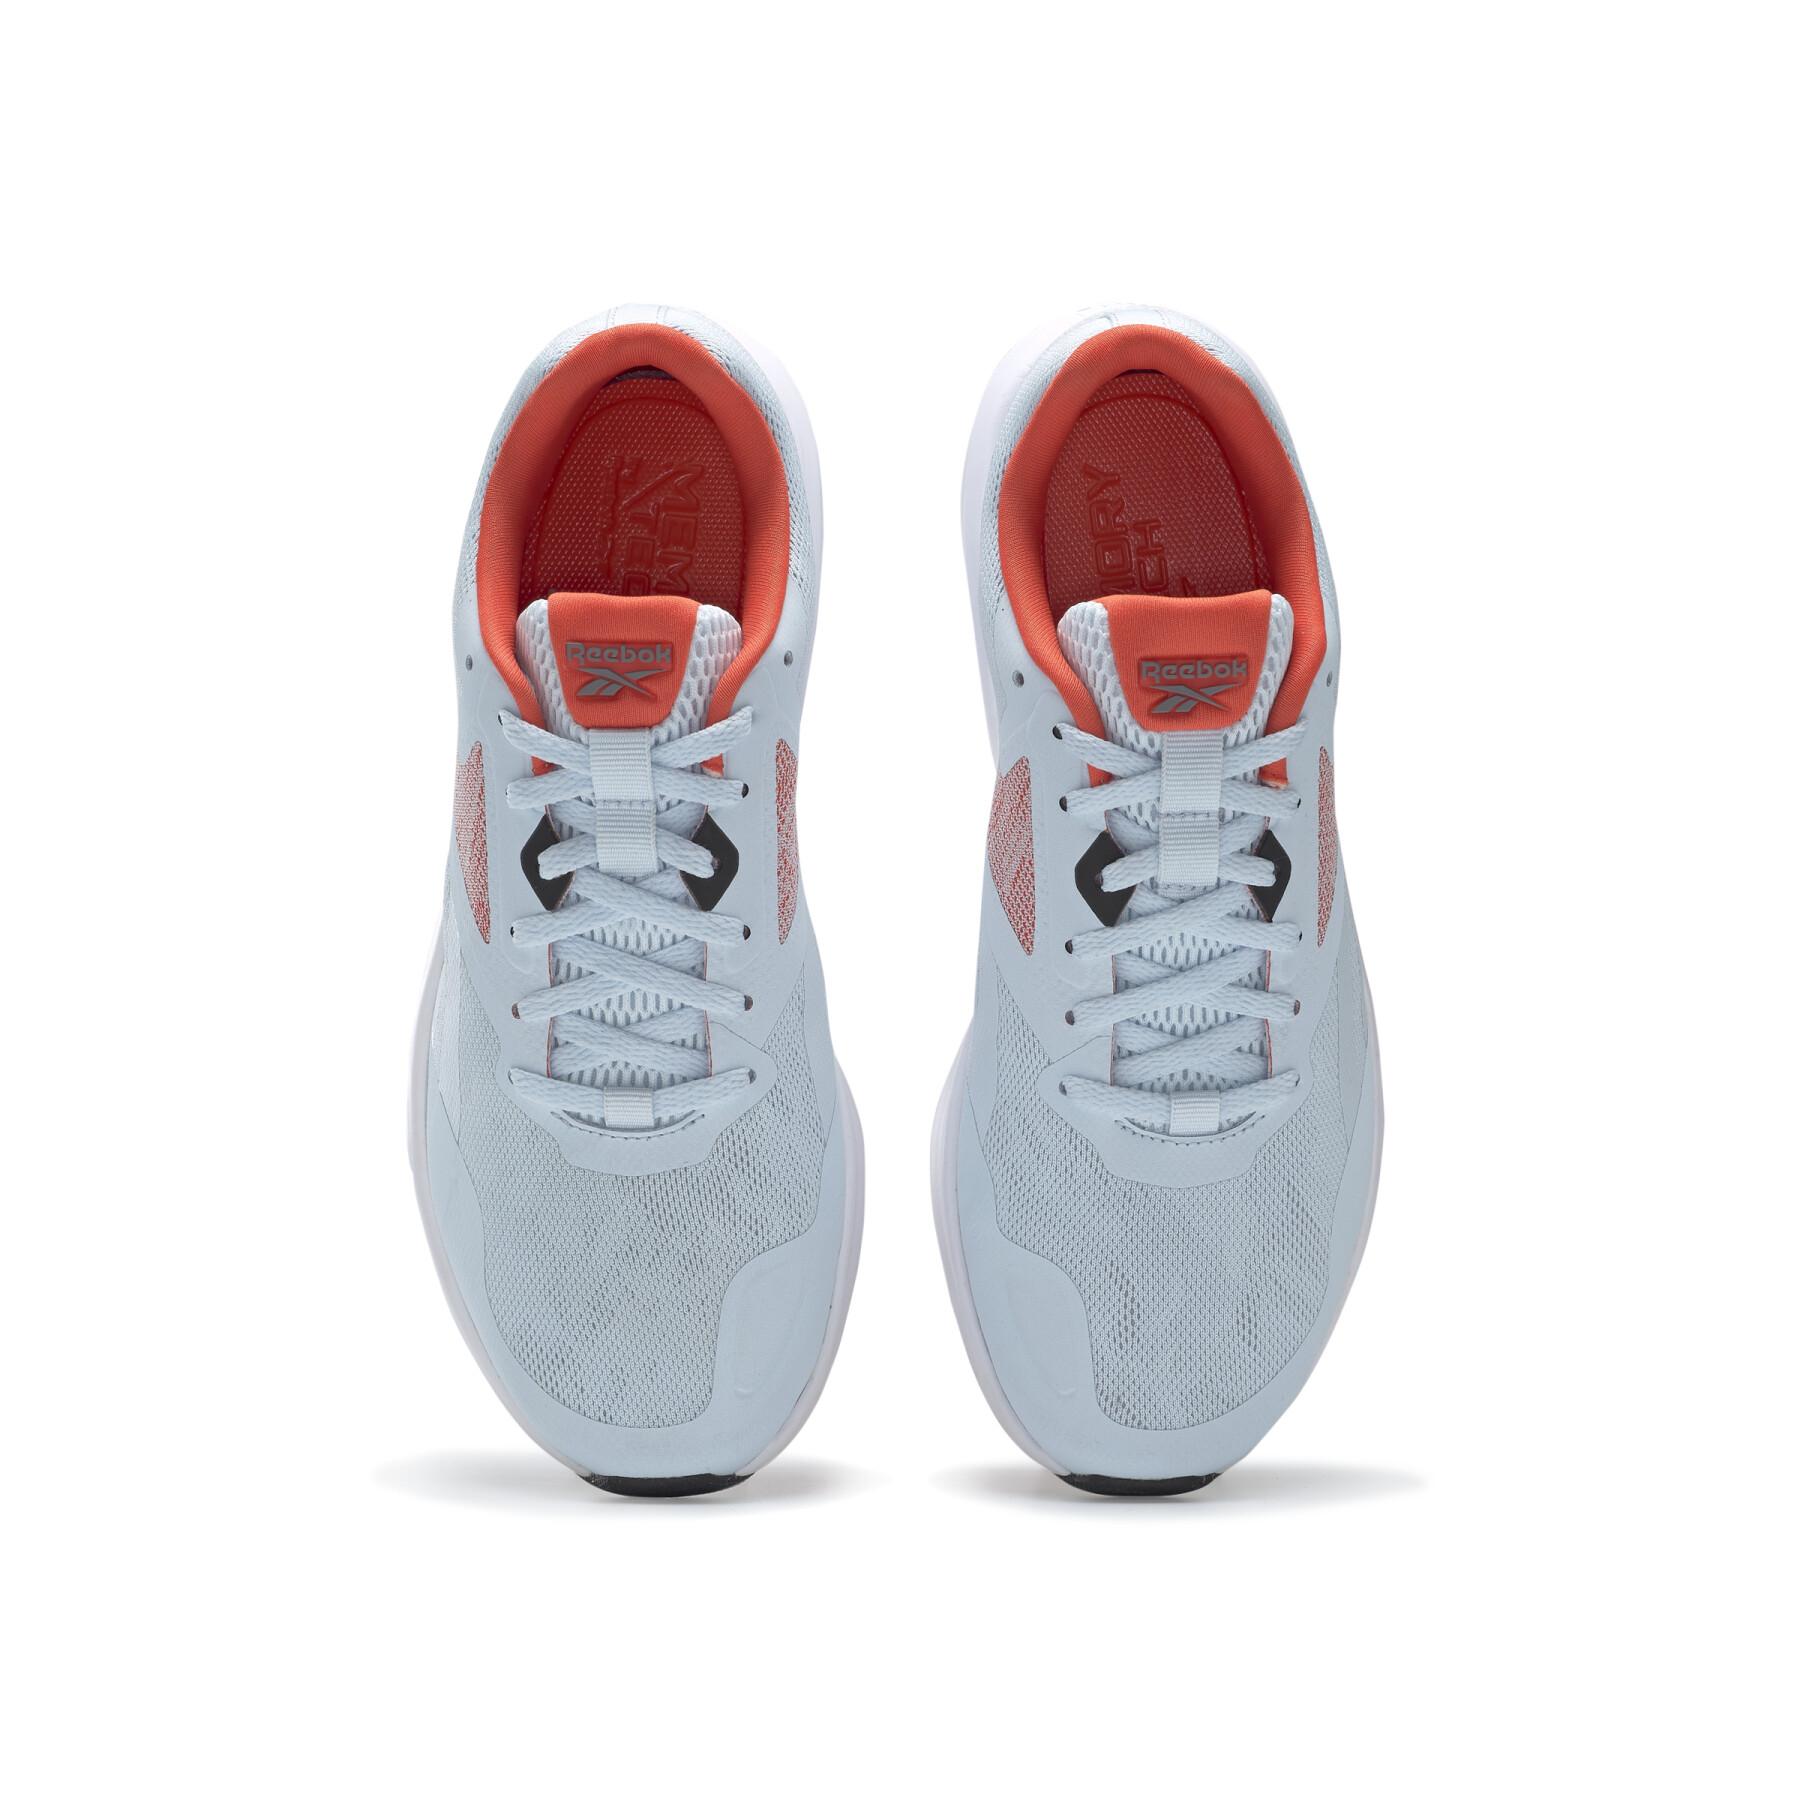 Chaussures de running femme Reebok Runner 4.0